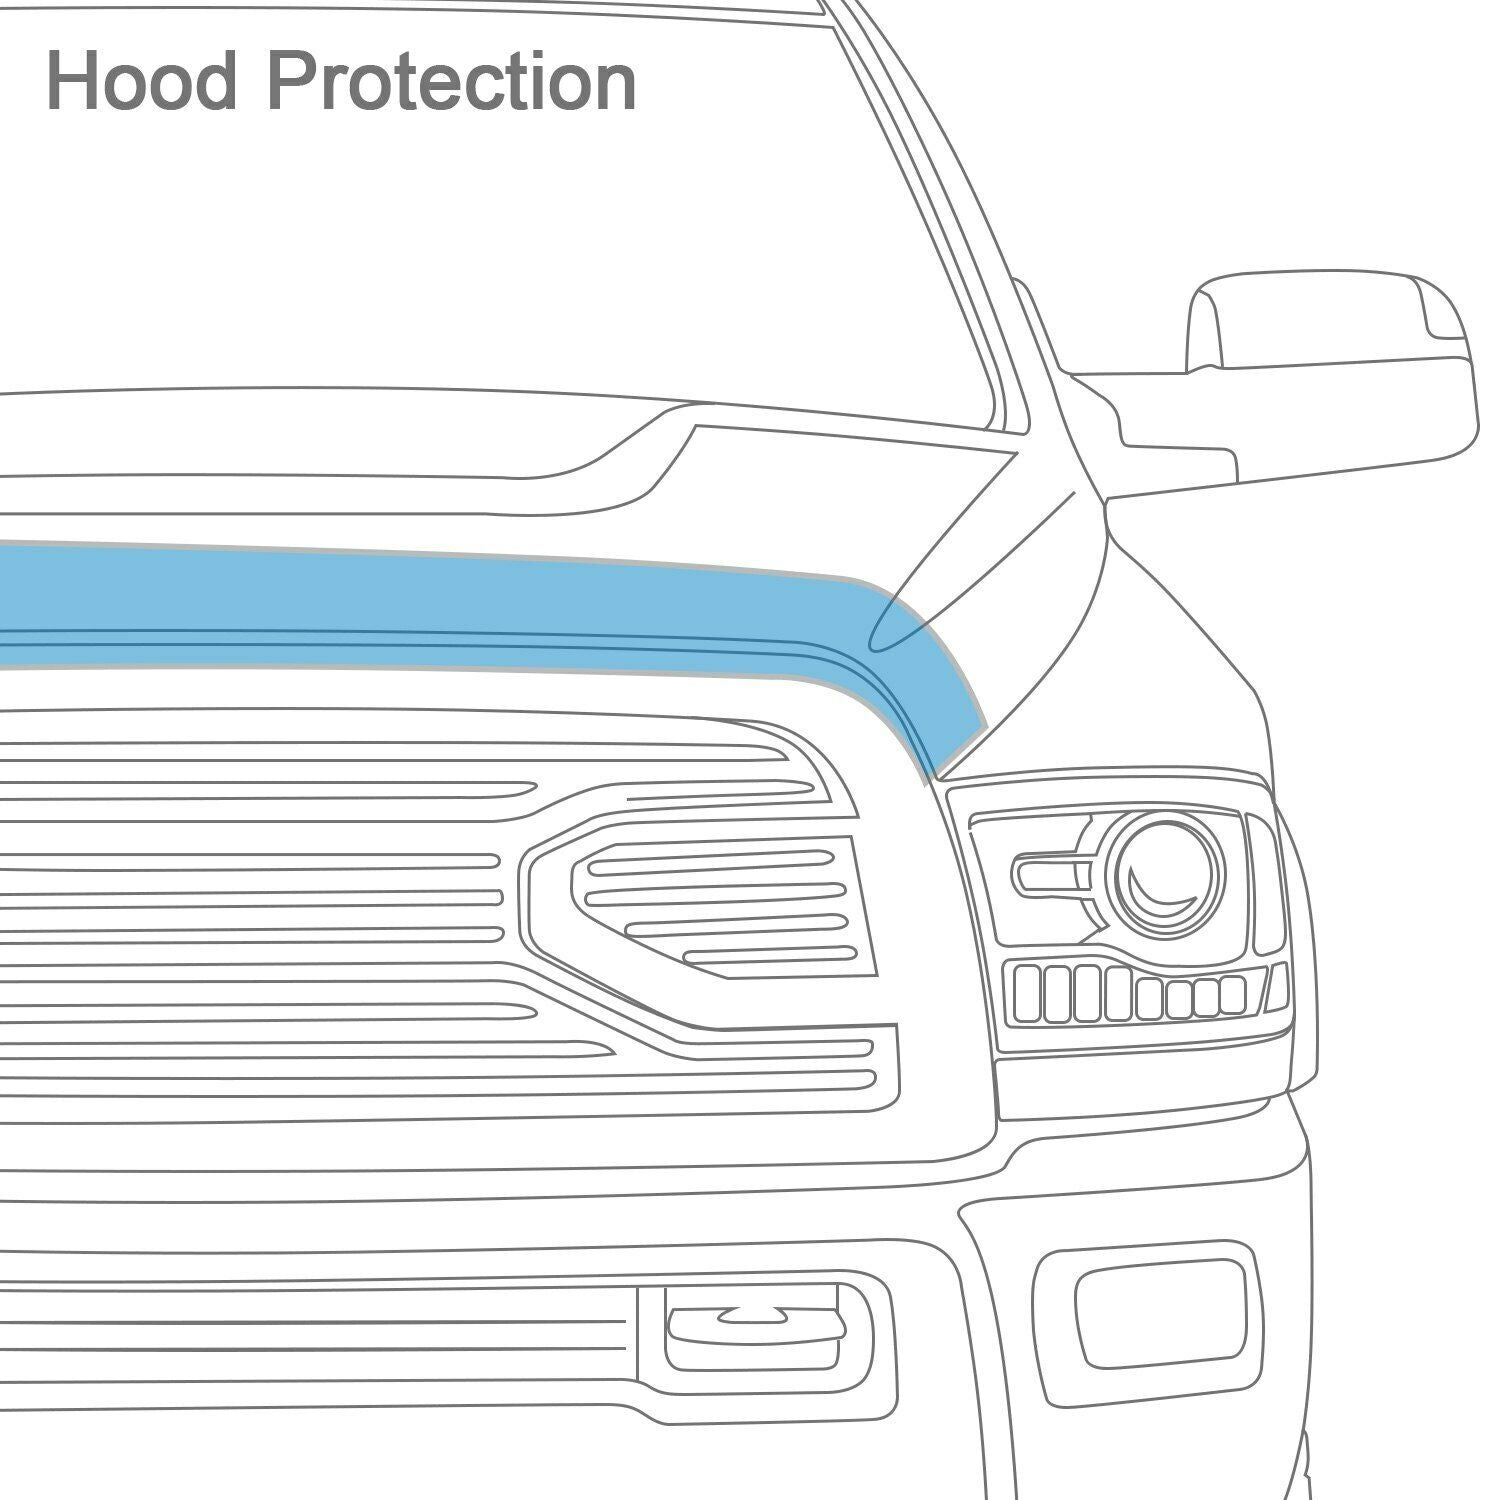 AVS Hoodflector Smoke Hood Protector Bug Shield For 2012-14 Toyota Camry - 20851